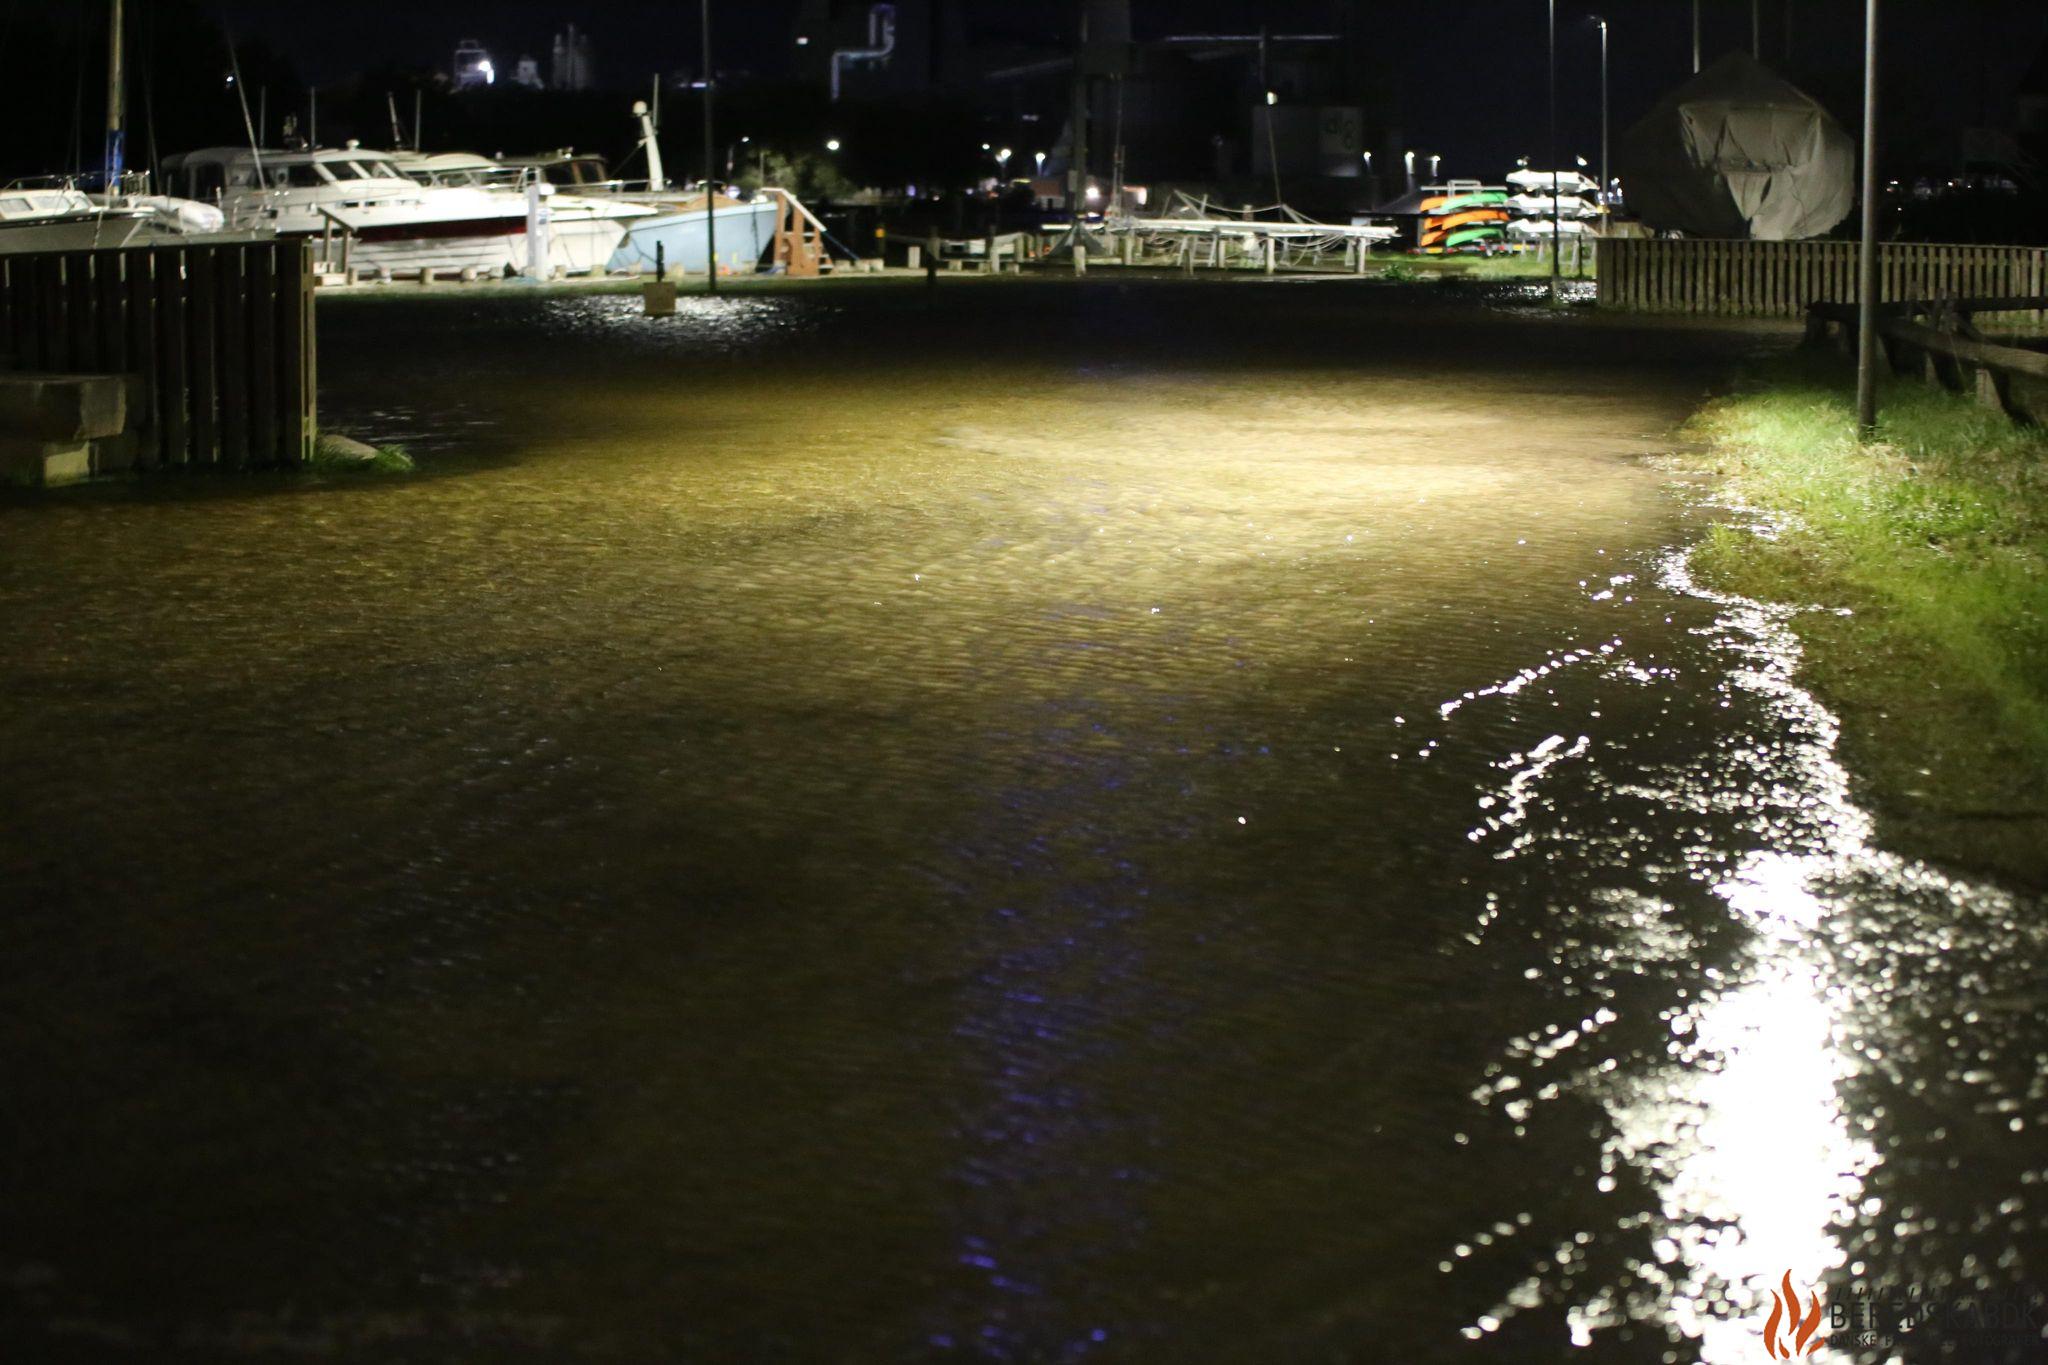 19/10-23 Oversvømmelse i Randers Lystbådehavn: Vandet går over sine bredder